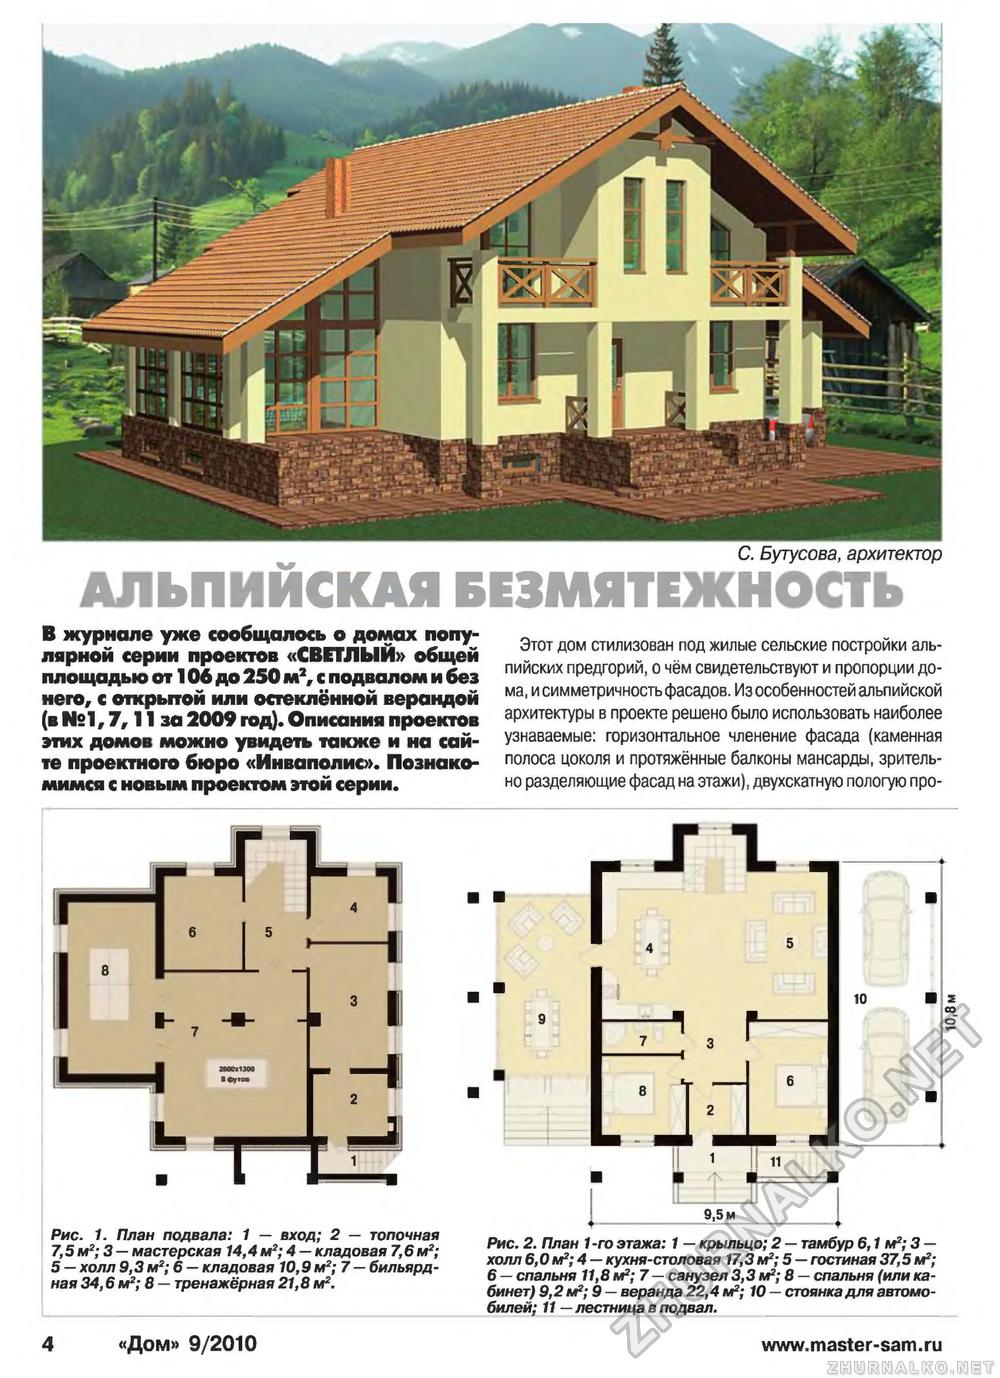 Дом 2010-09, страница 4